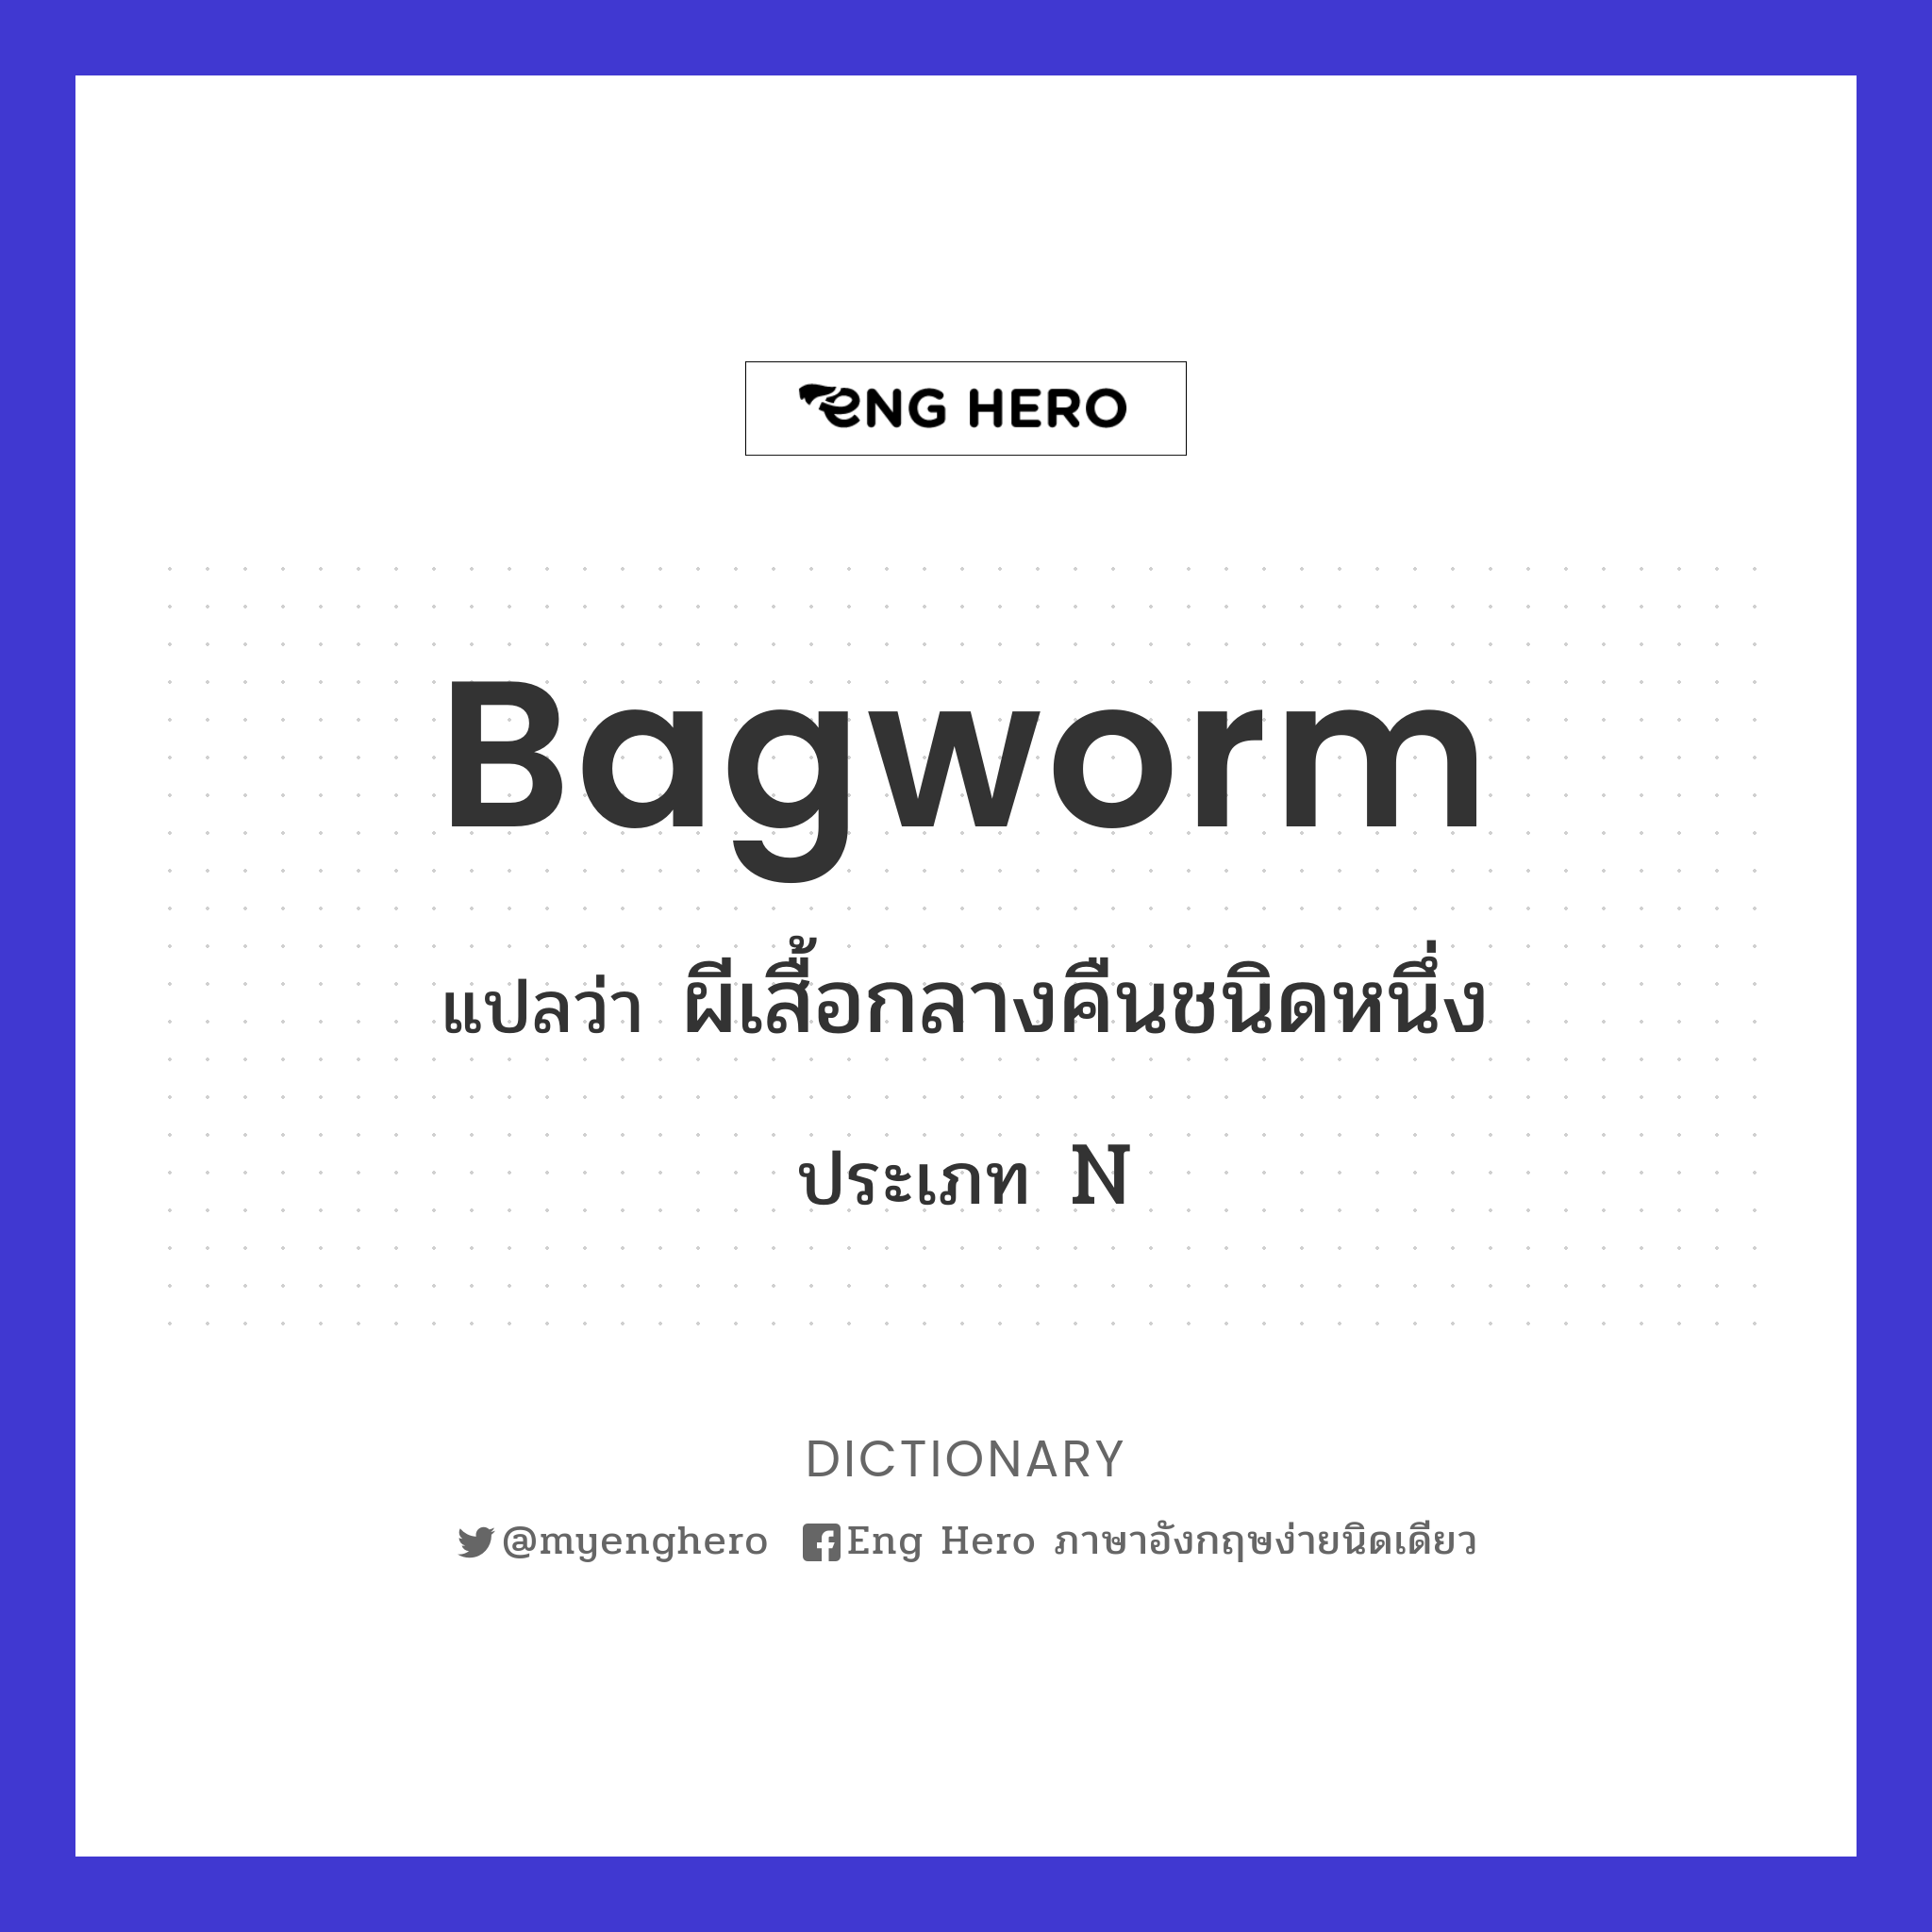 bagworm